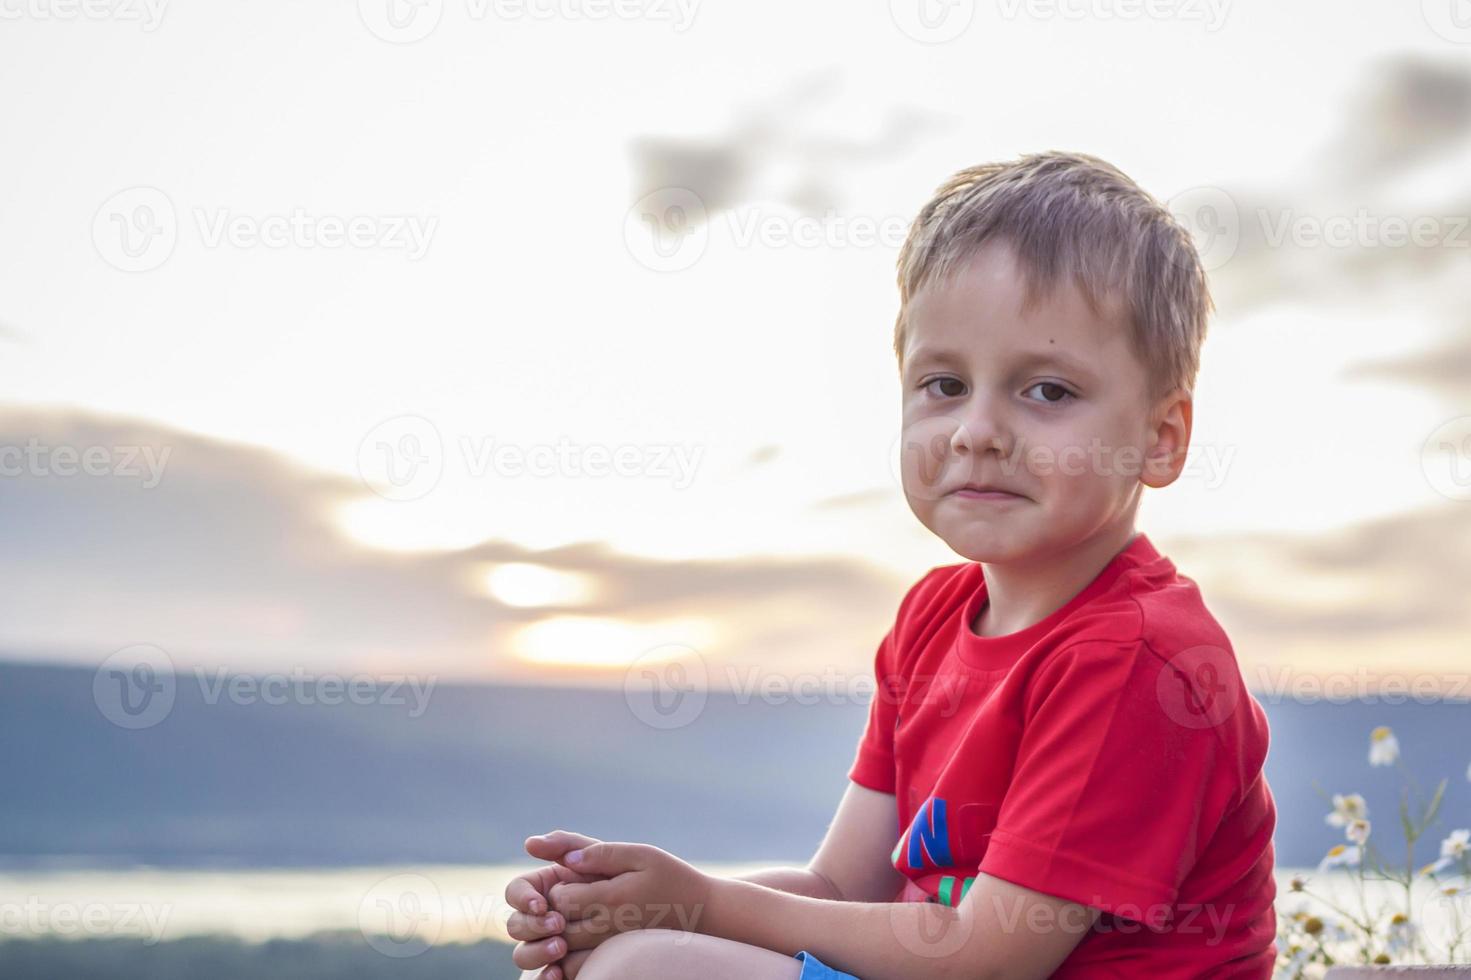 söt pojke i en röd t-shirt på de bakgrund av en fantastisk solnedgång. resa. de ansikte uttrycker naturlig glad känslor. inte iscensatt foton från natur.